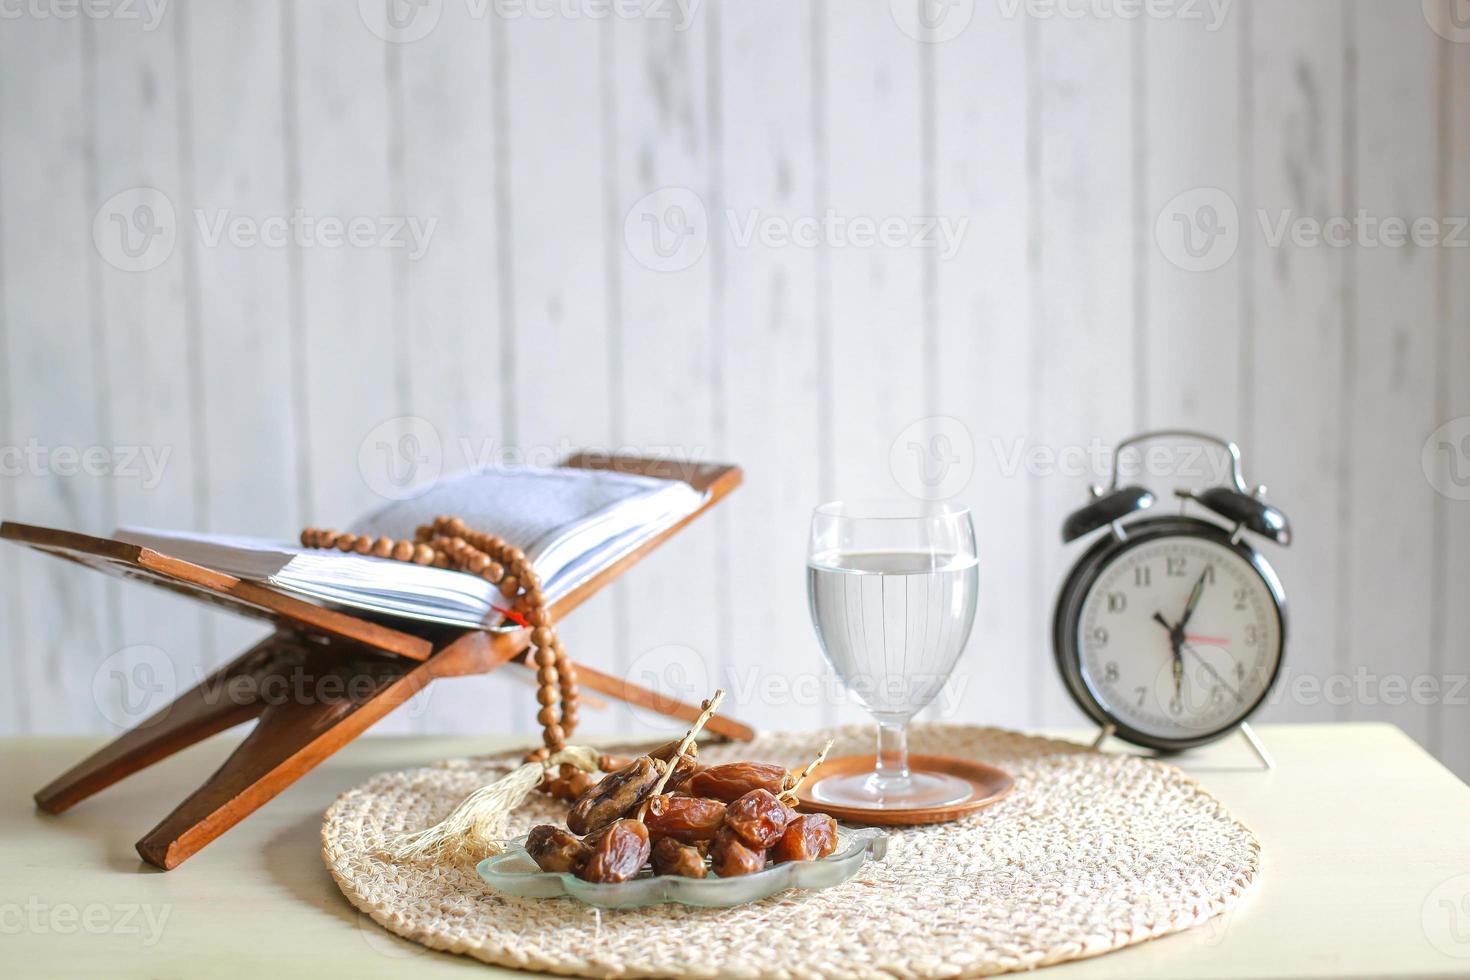 kurma oder dattelfrucht mit glas mineralwasser, heiliges buch al-quran, wecker und gebetsperlen auf dem tisch. traditionelles ramadan, iftar-mahlzeit. ramadan kareem fastenmonatskonzept foto